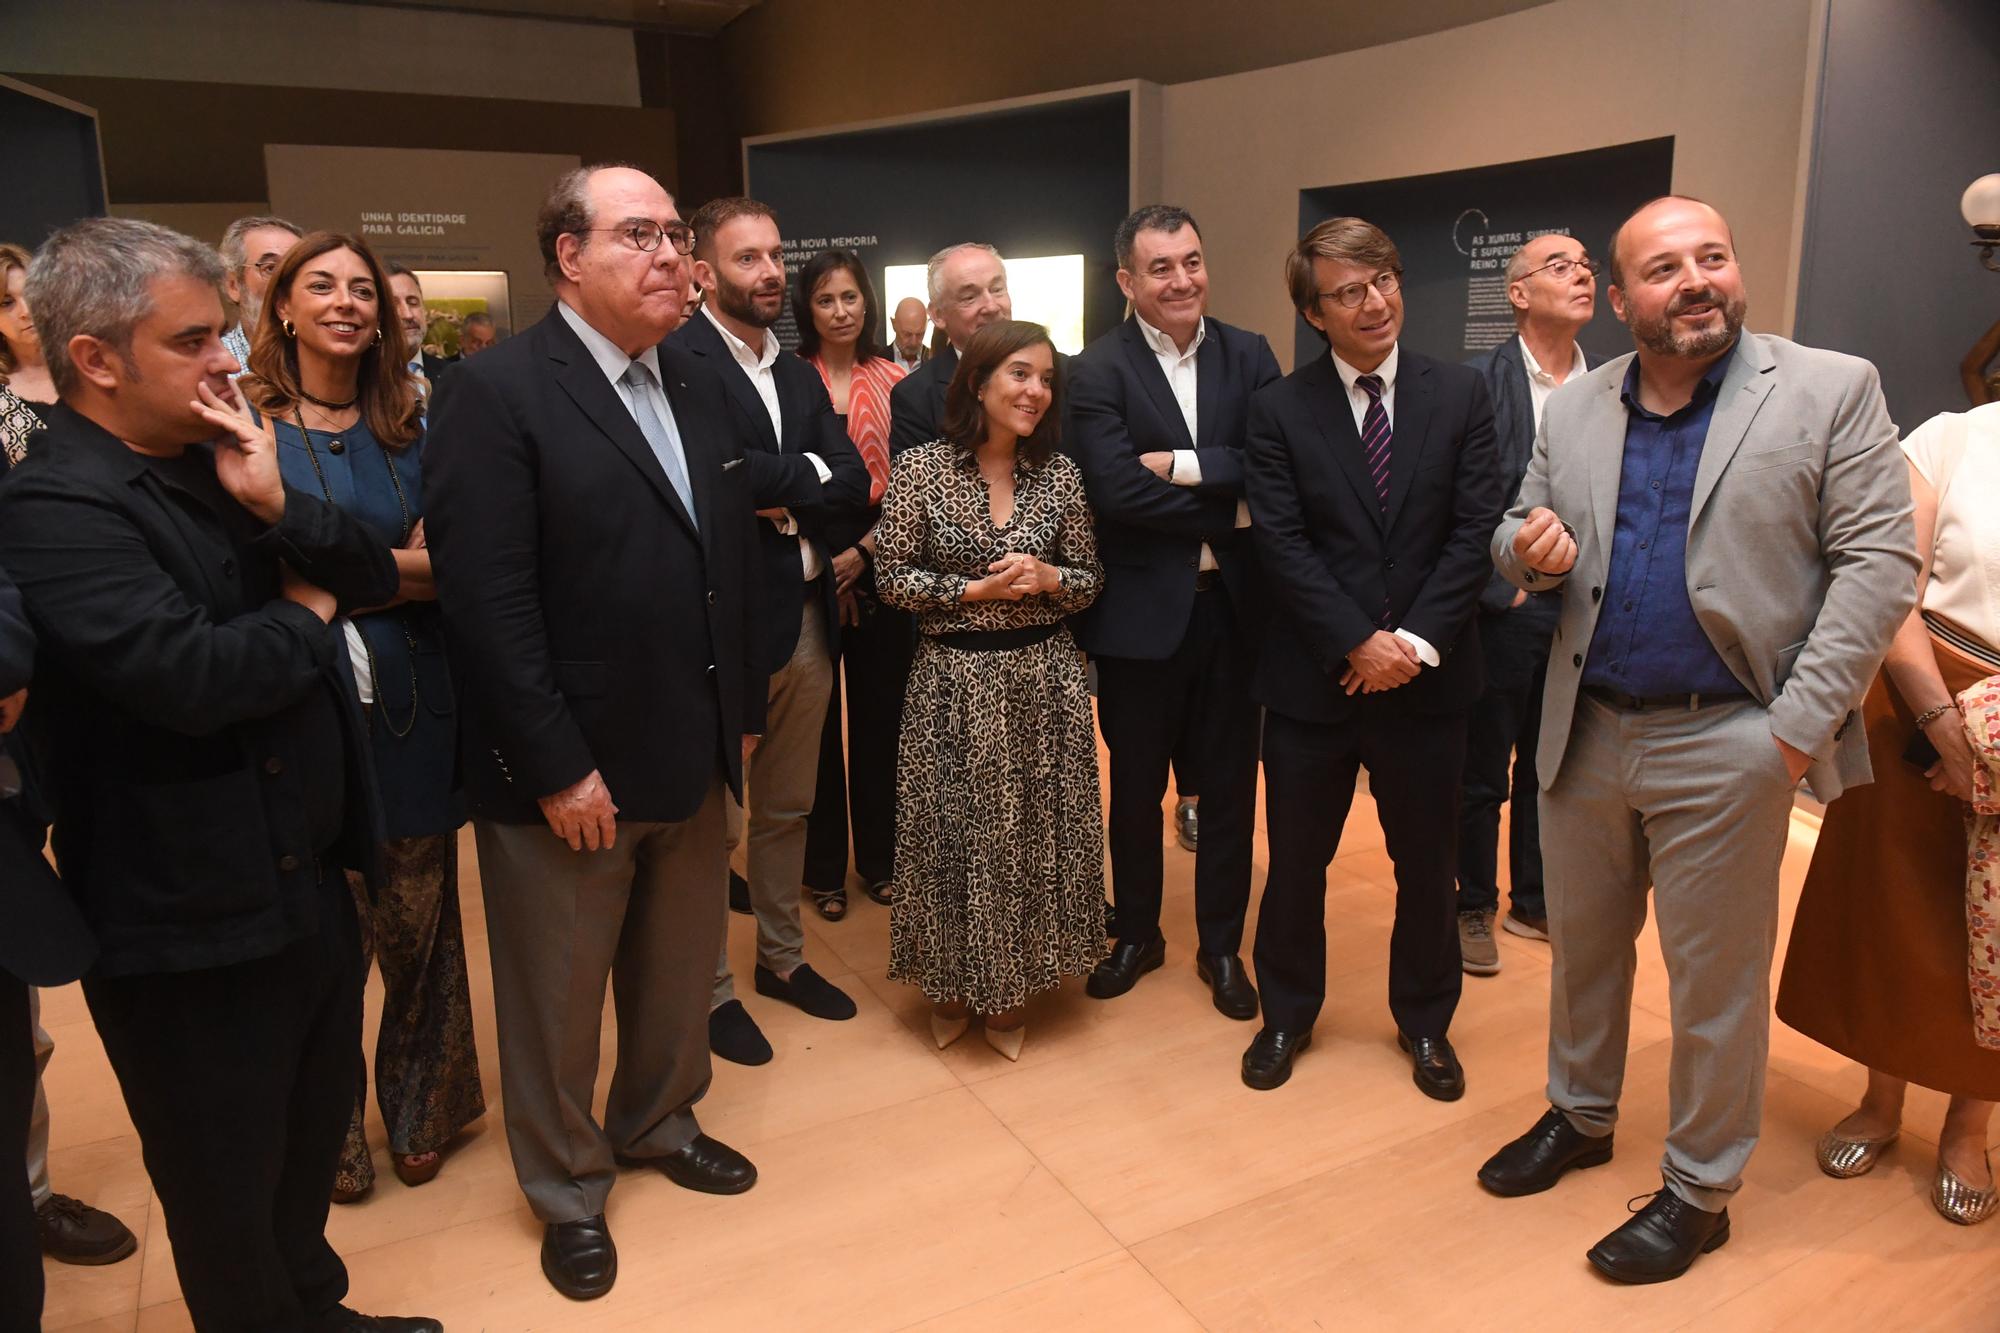 Afundación inaugura 'A Coruña no tempo', una exposición sobre la historia de la ciudad